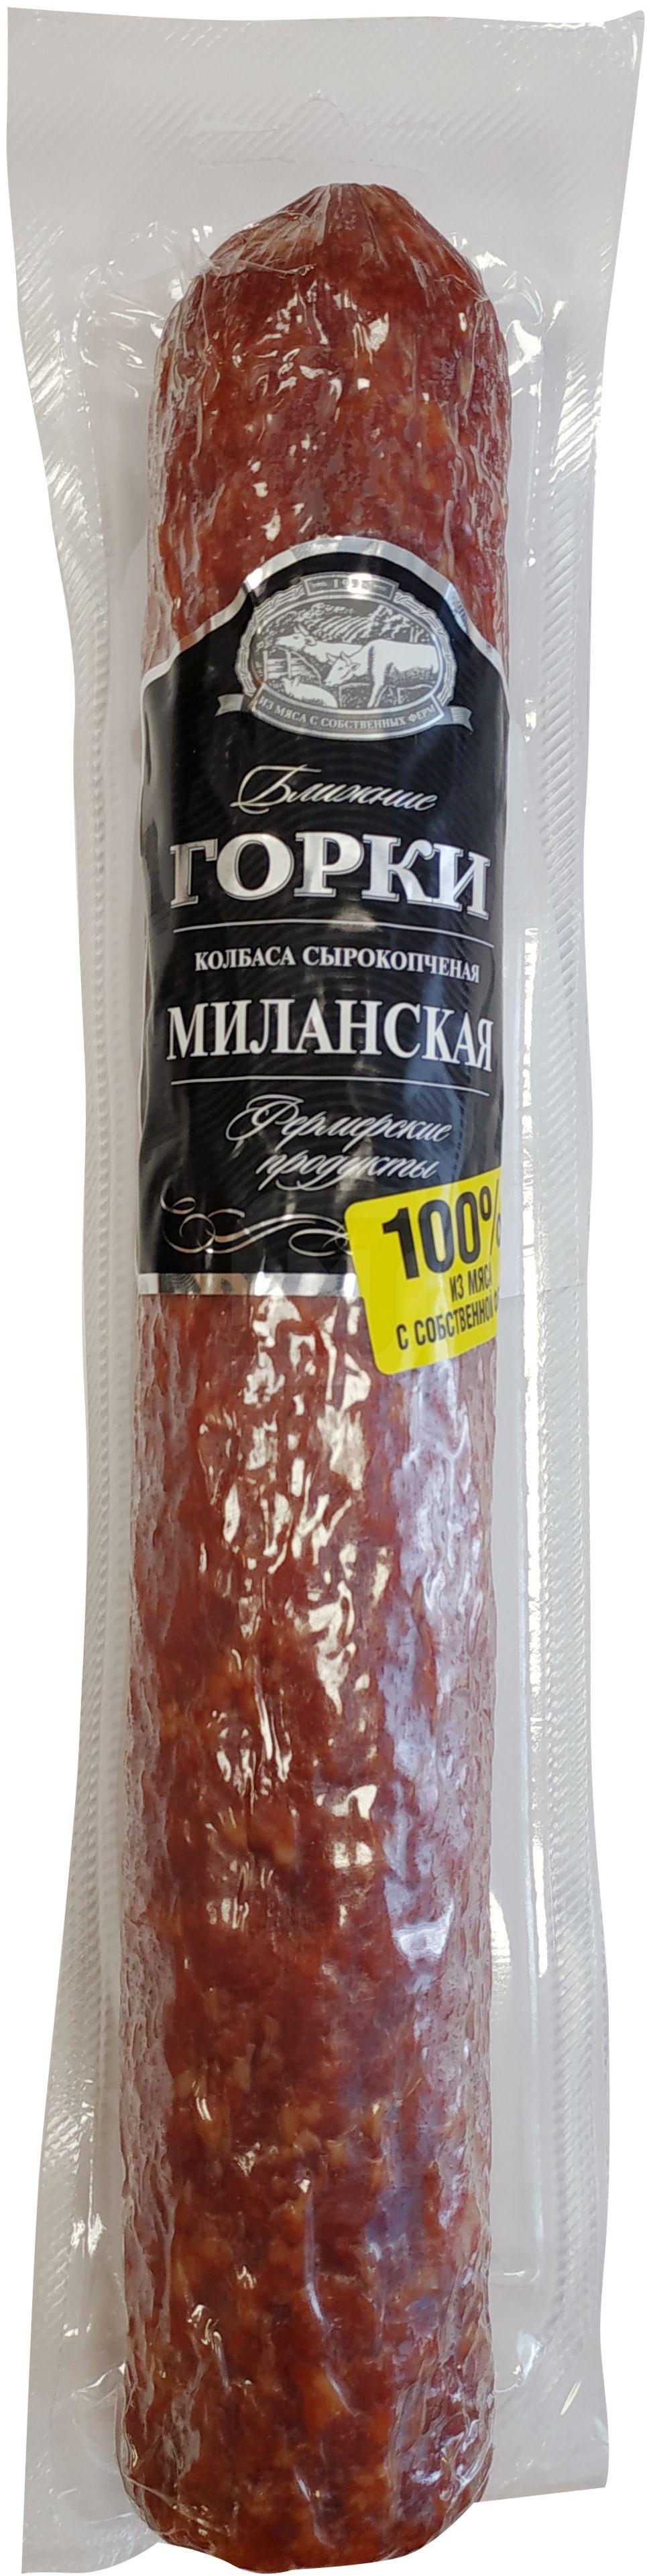 Колбаса Ближние горки Миланская сырокопченая +-500 г